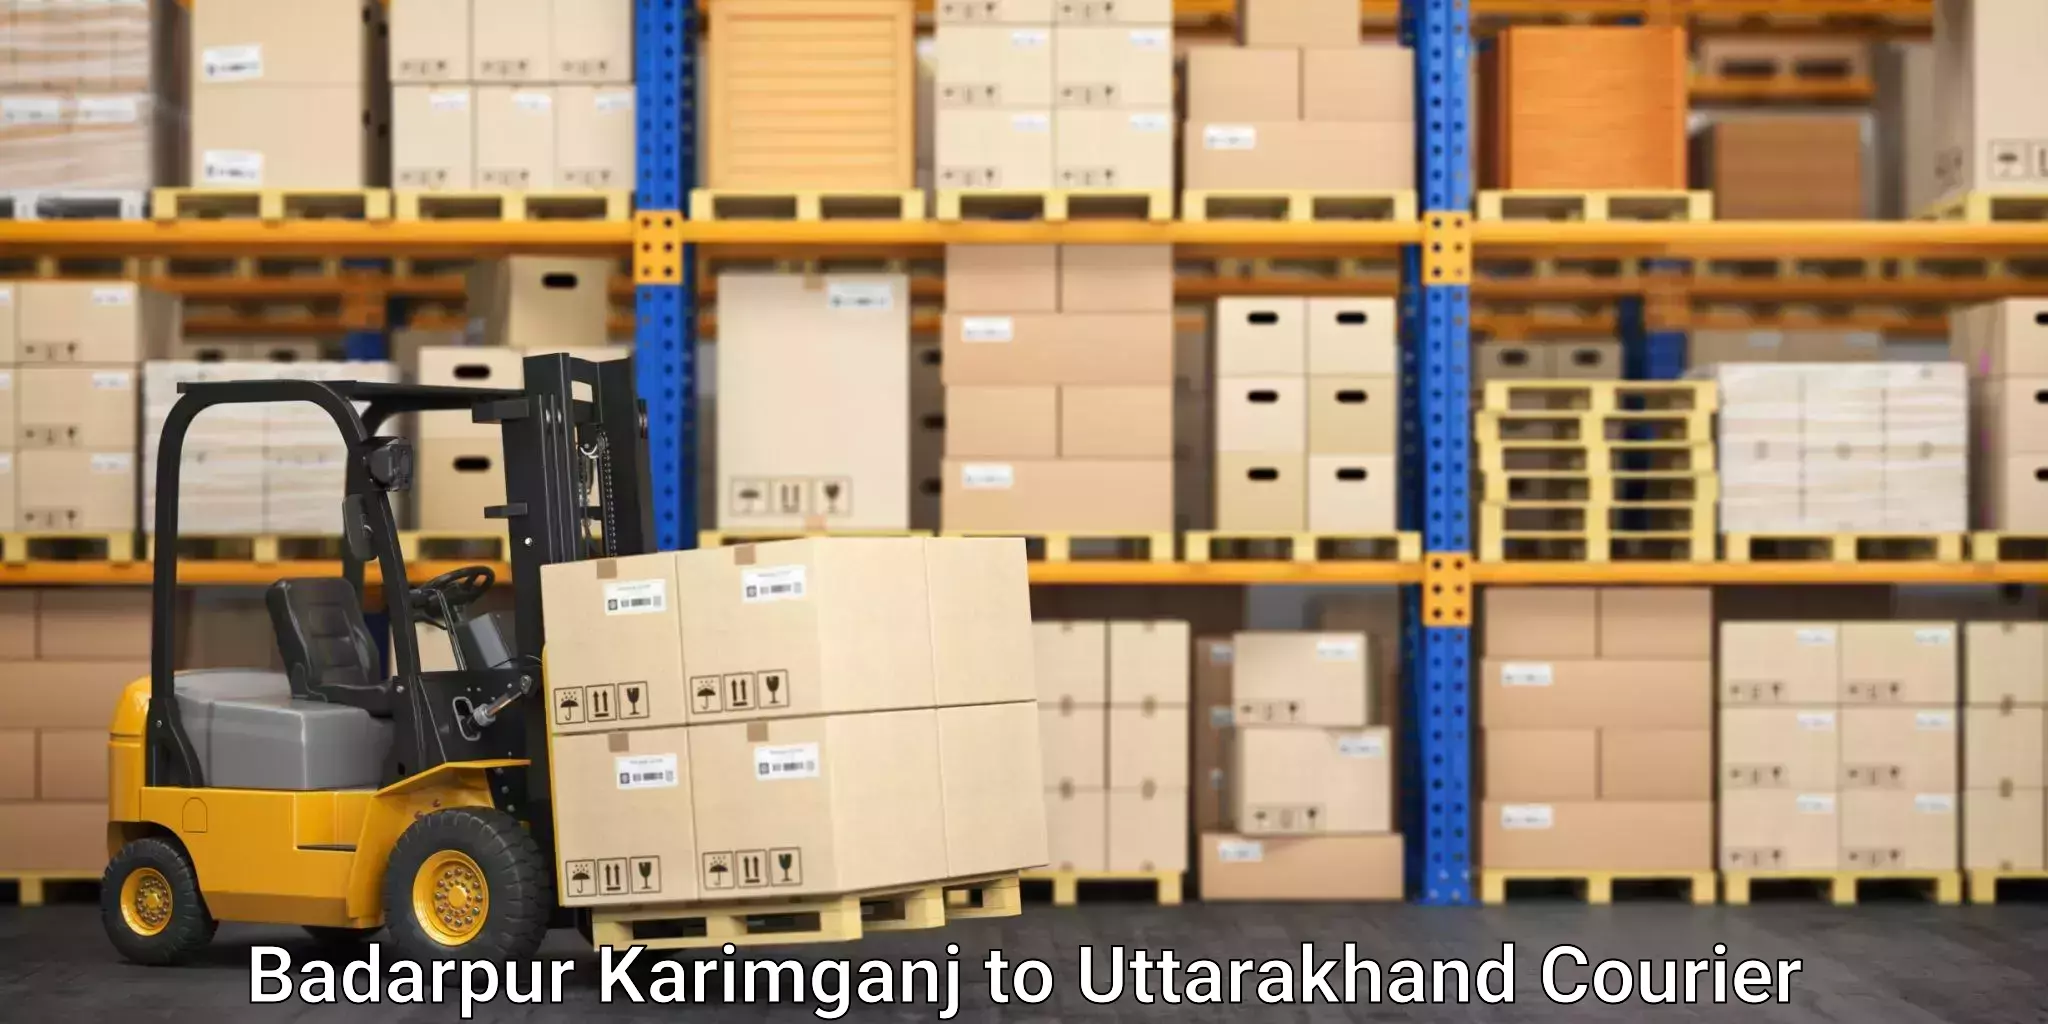 On-call courier service Badarpur Karimganj to Uttarkashi